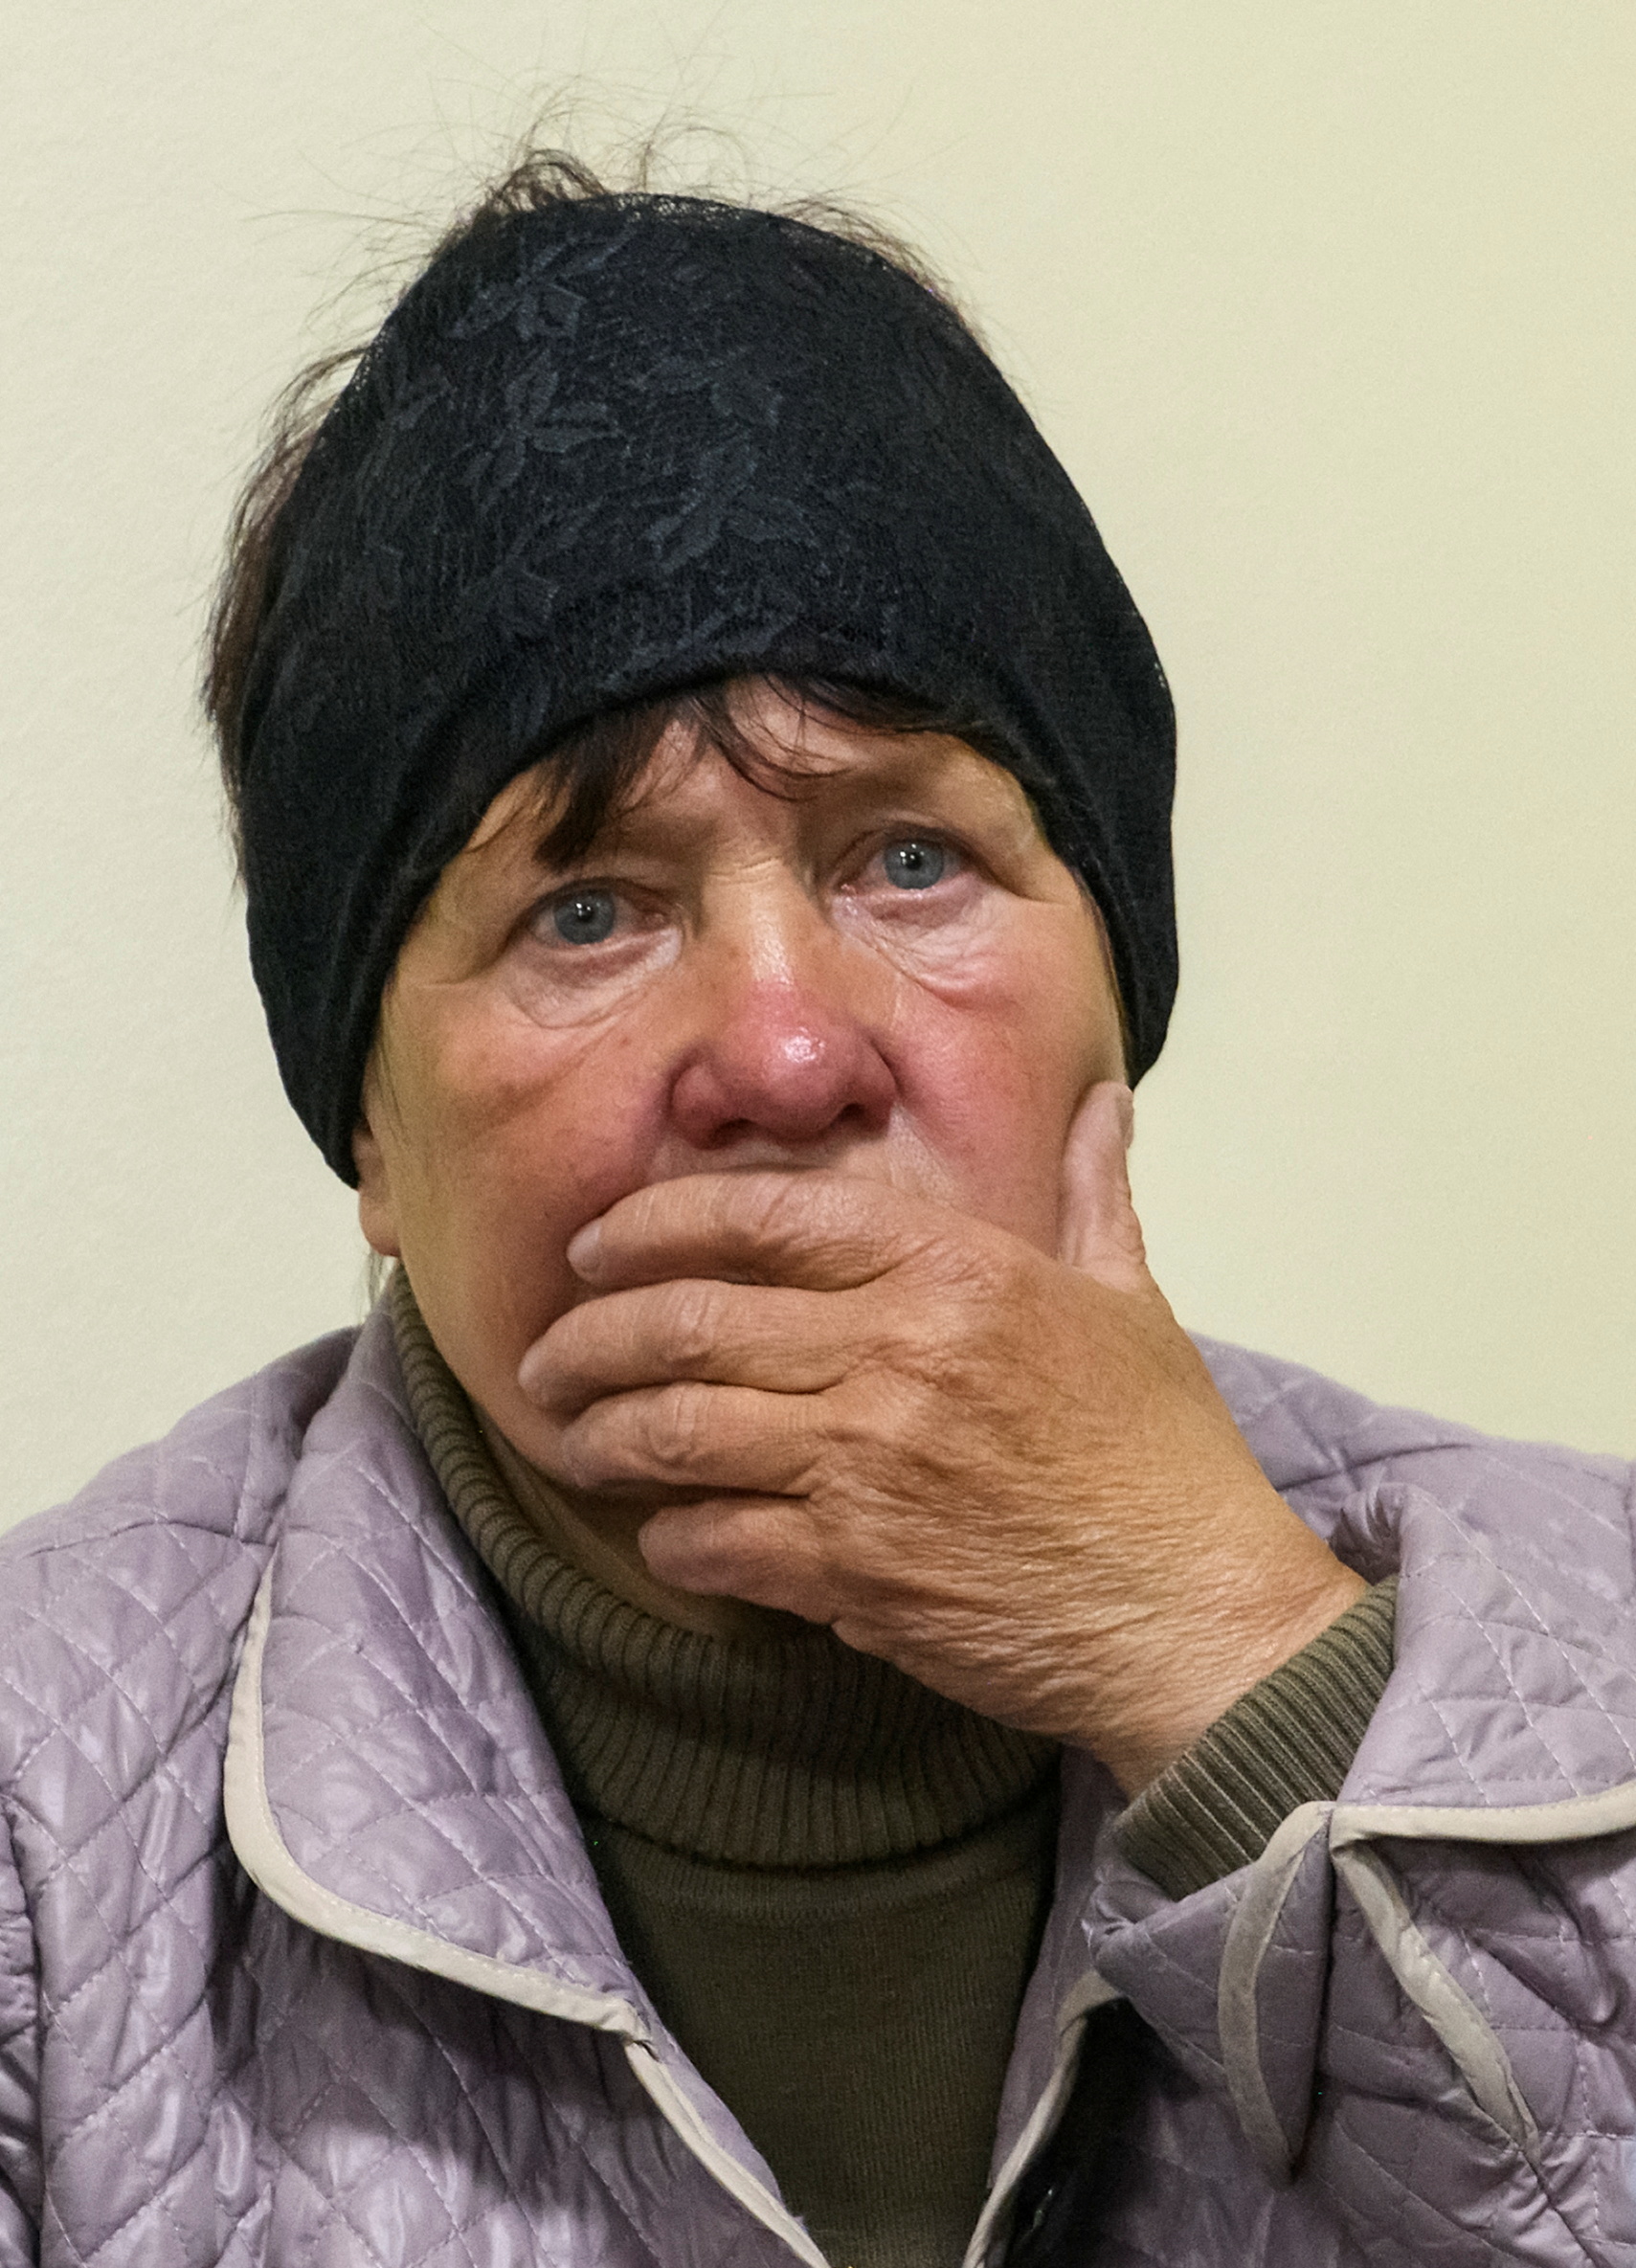 Kateryna Shelikhova, la viuda de la víctima, asiste al juicio contra el asesino de su marido el soldado ruso Vadim Shishimarin (Reuters)